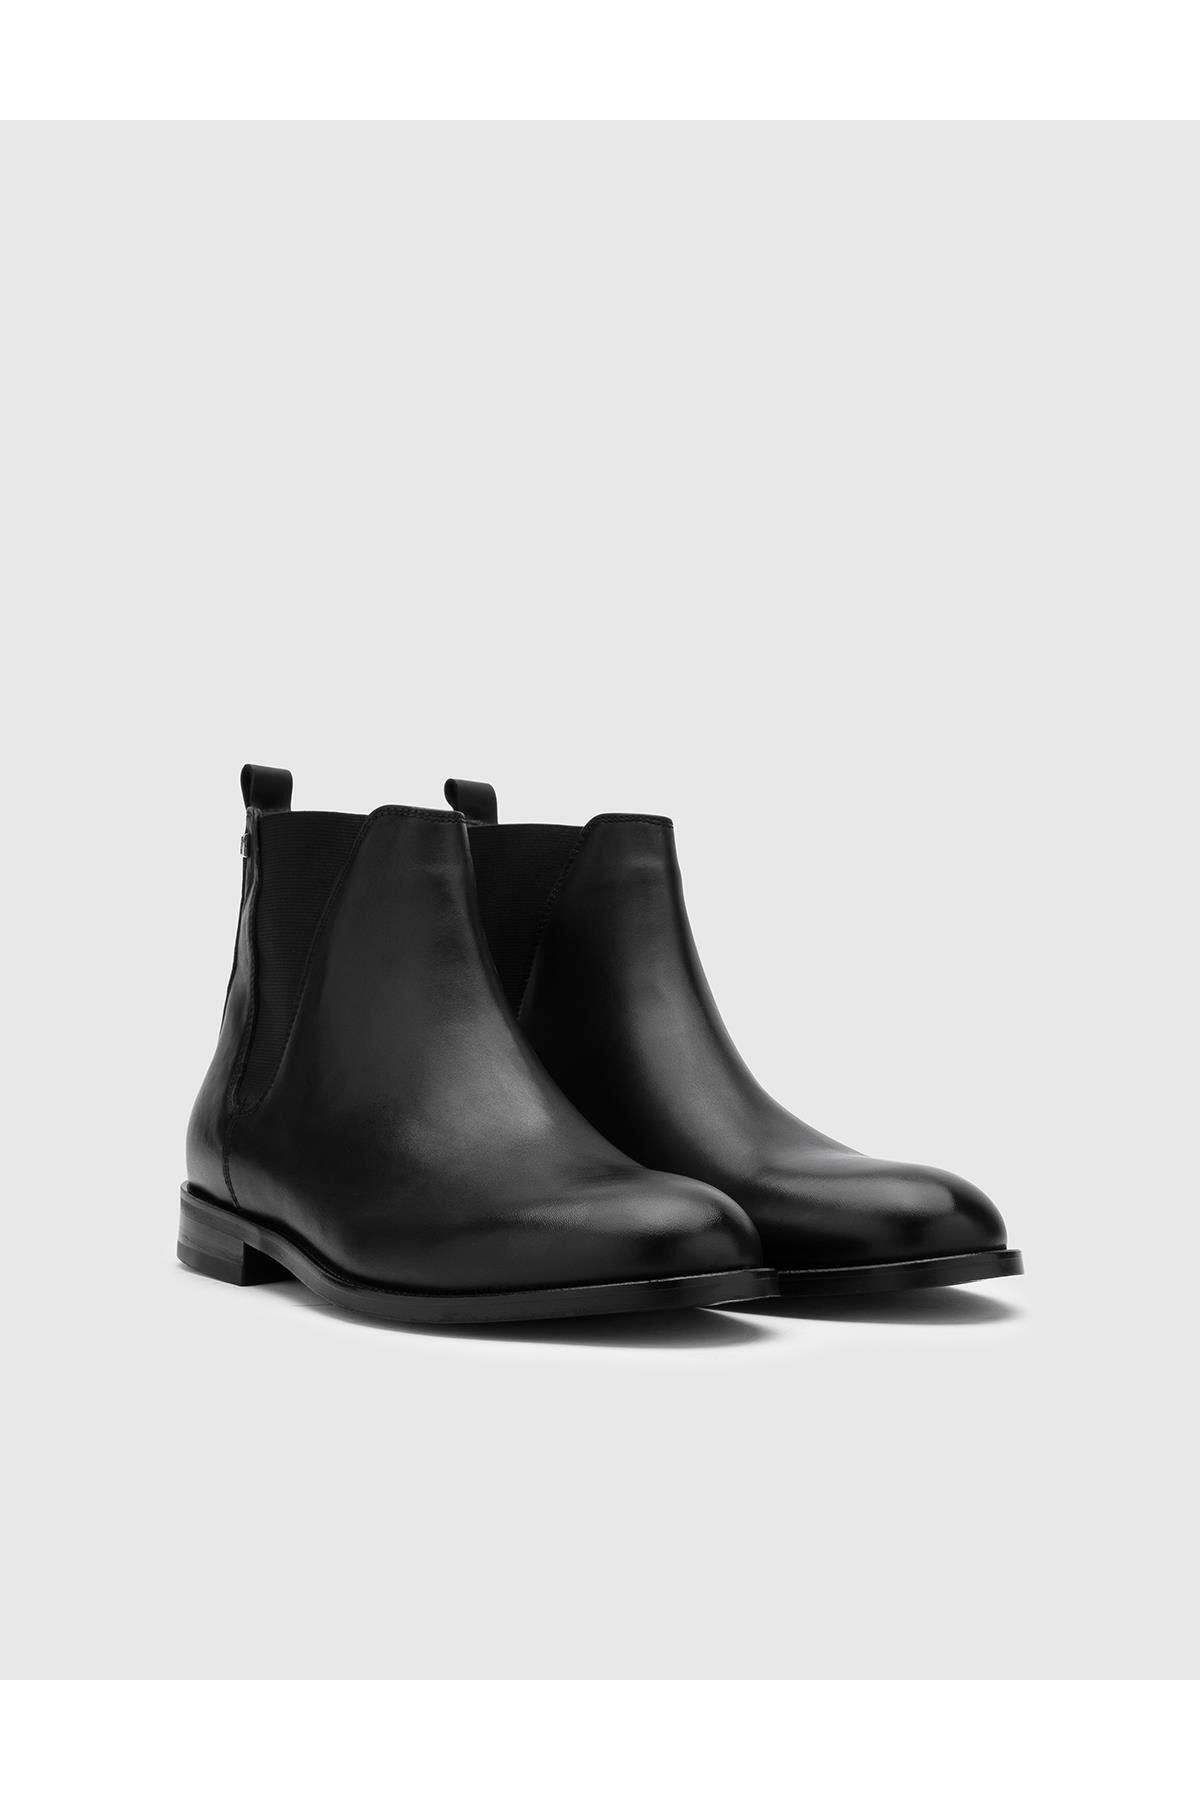 İlvi Darrell Мужские черные ботинки из натуральной кожи Darrell-5138.1001